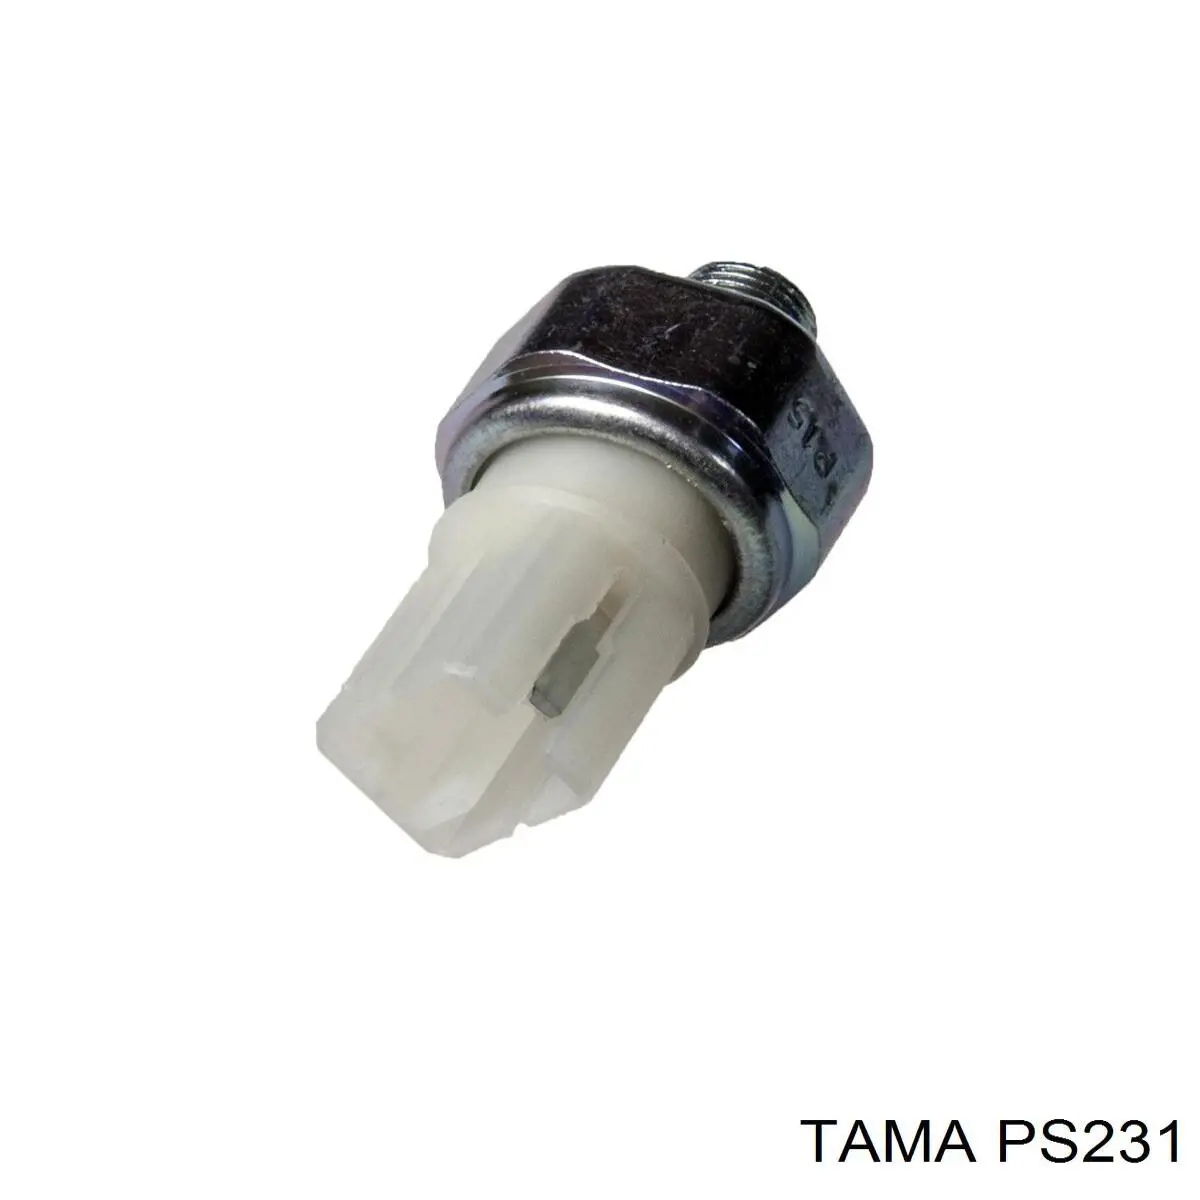 PS231 Tama датчик давления масла